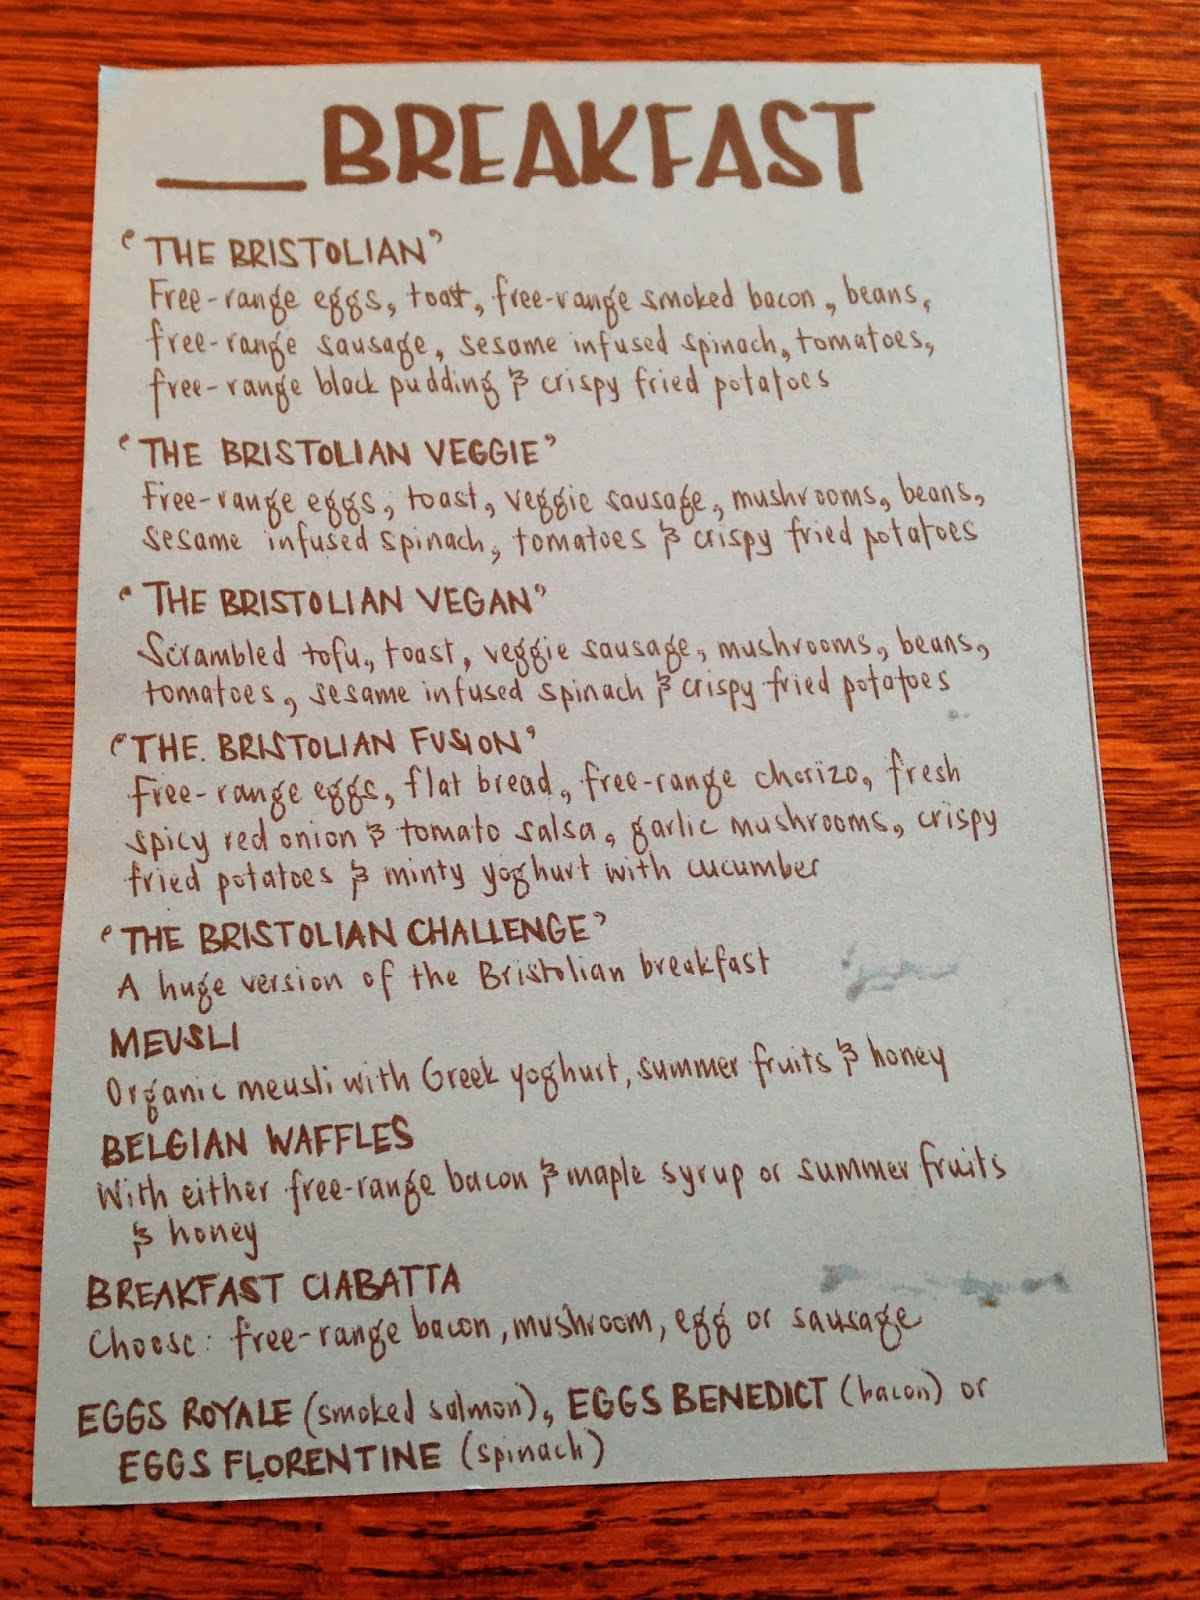 Breakfast menu at The Bristolian, Bristol